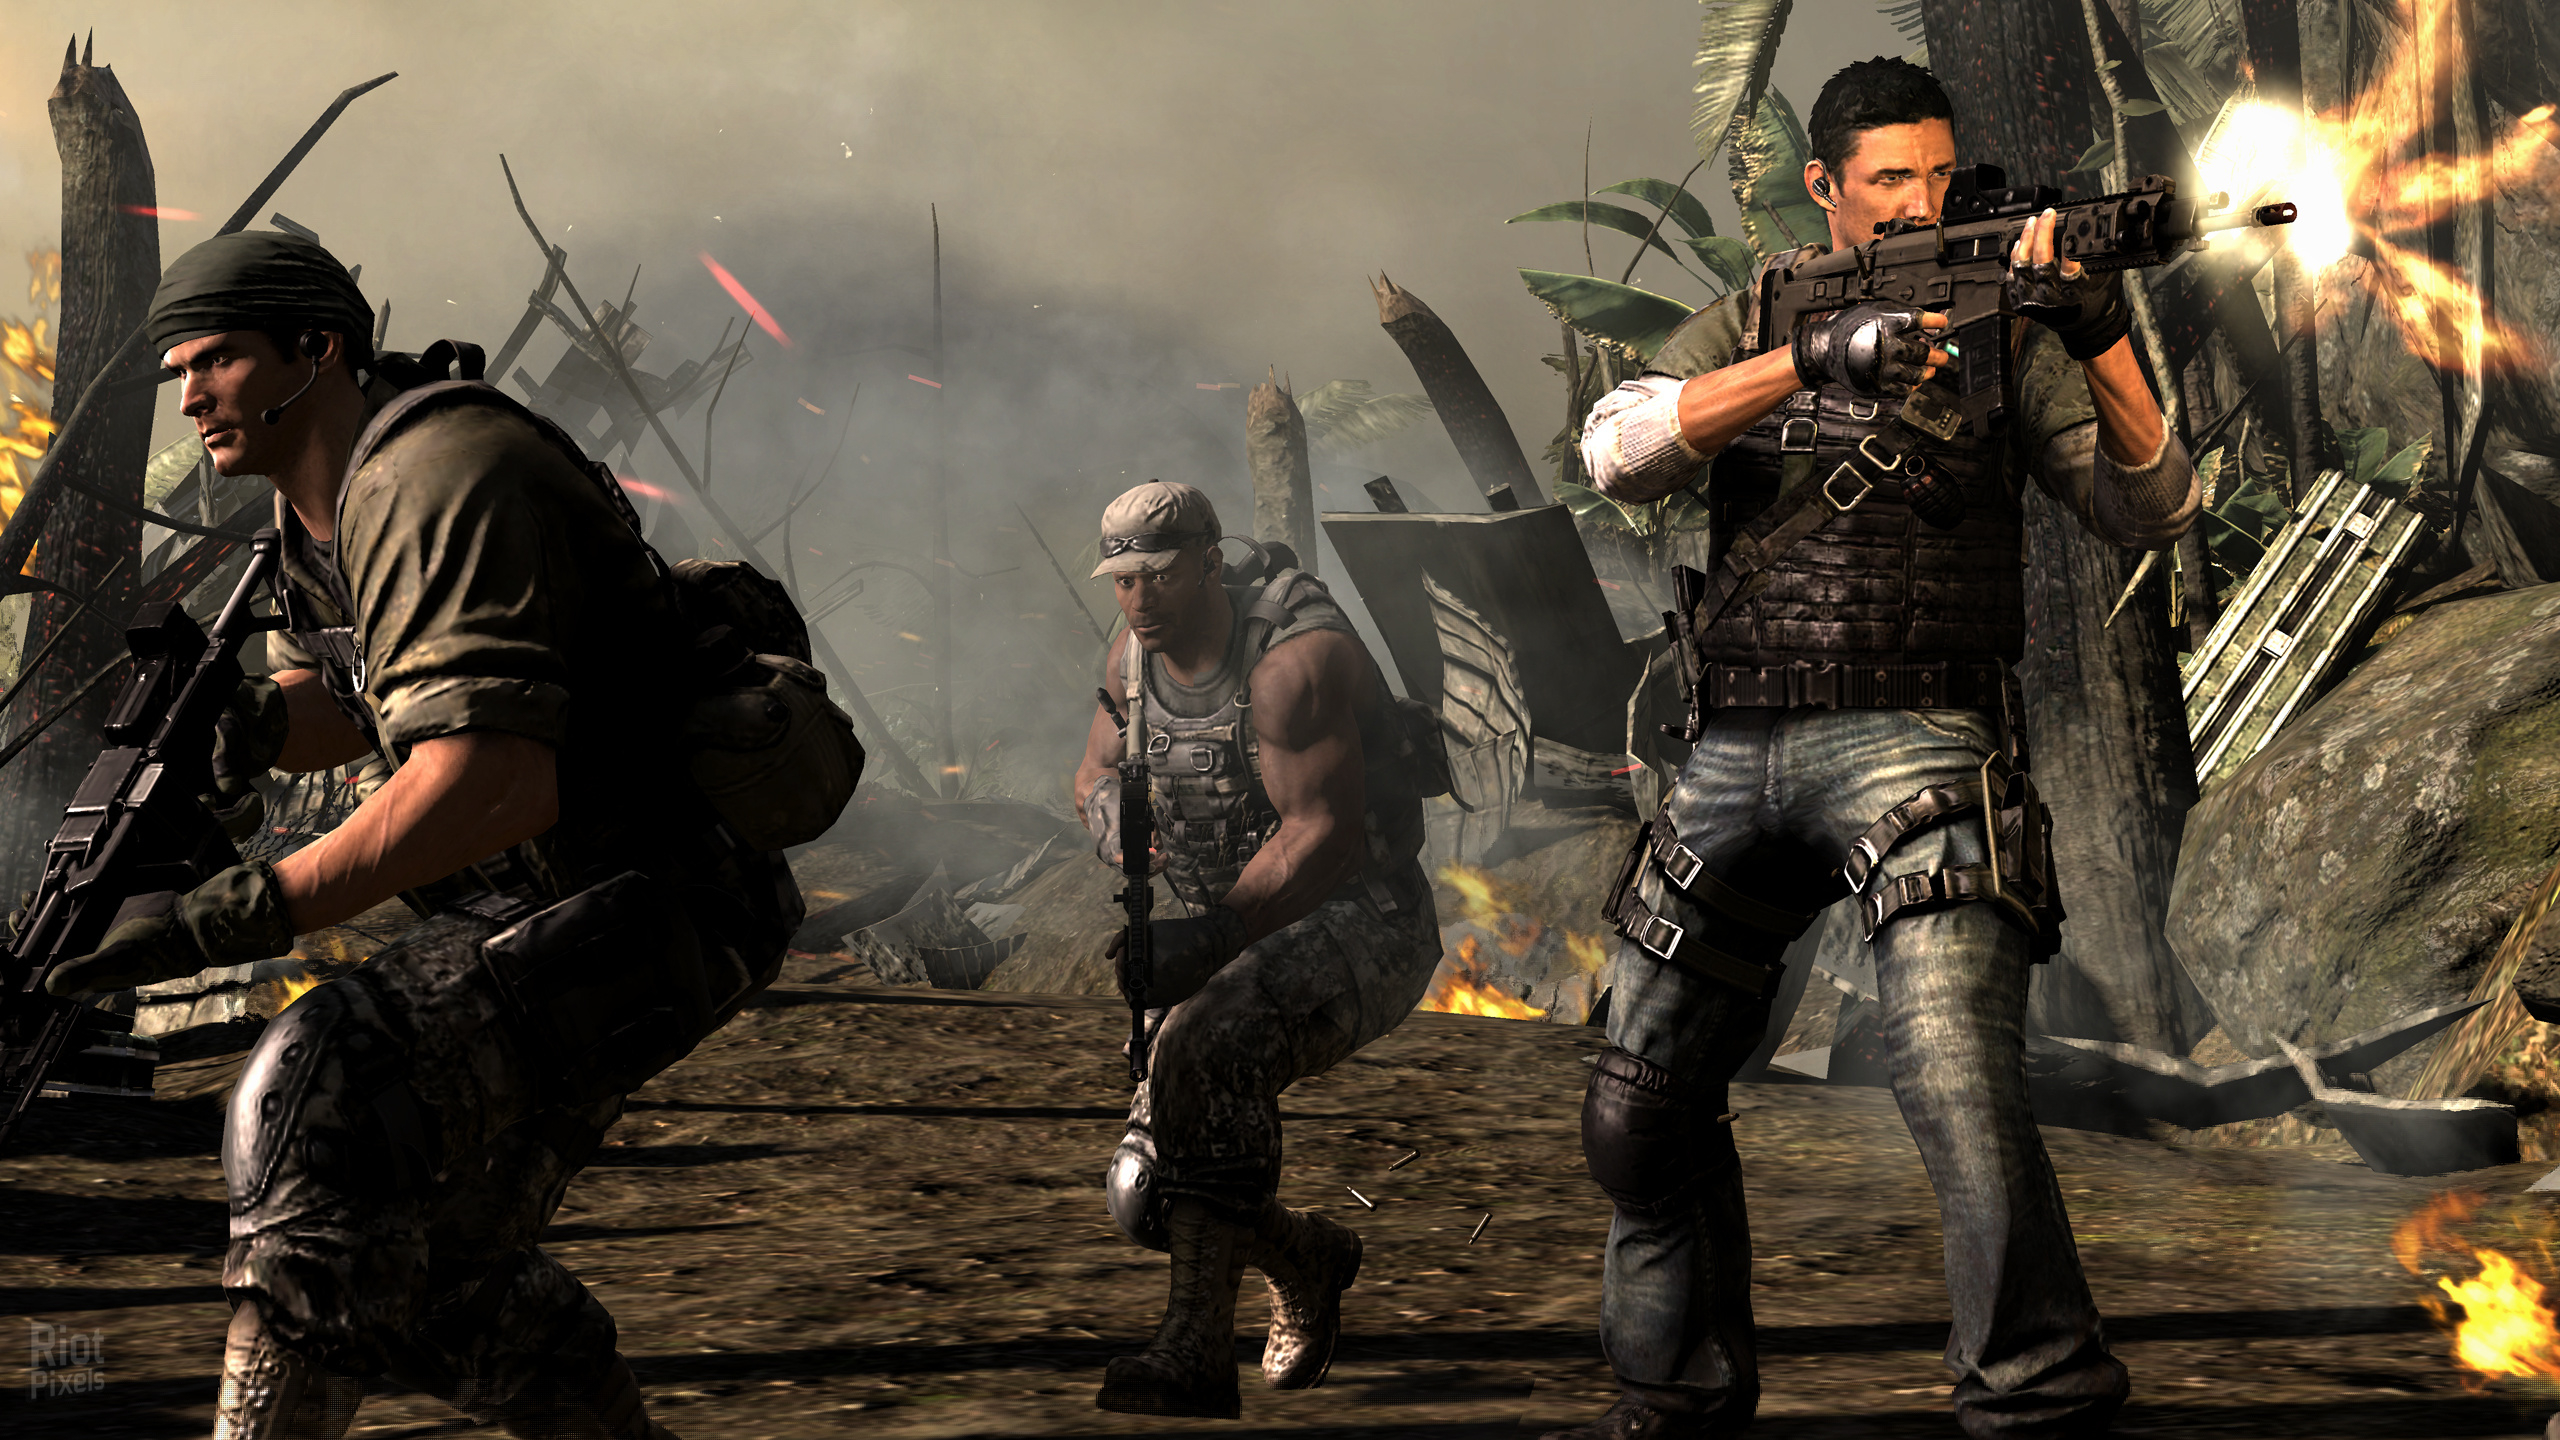 2560x1440 SOCOM 4: Navy SEALs game screenshots at Riot Pixels, images